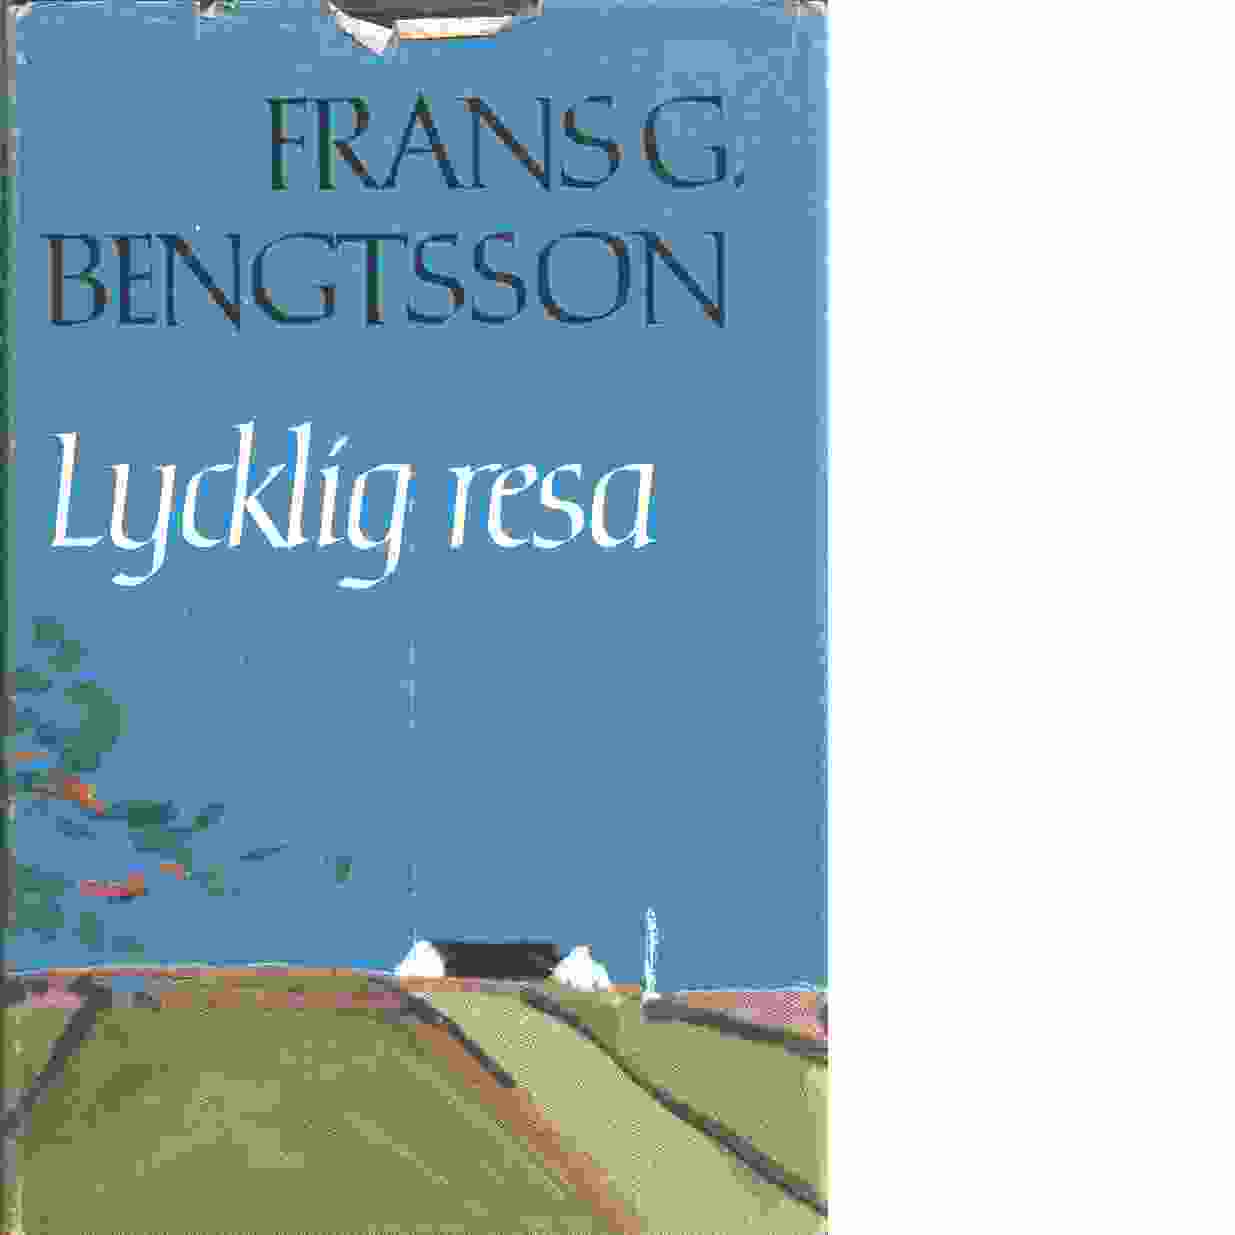 Lycklig resa - Bengtsson, Frans G.